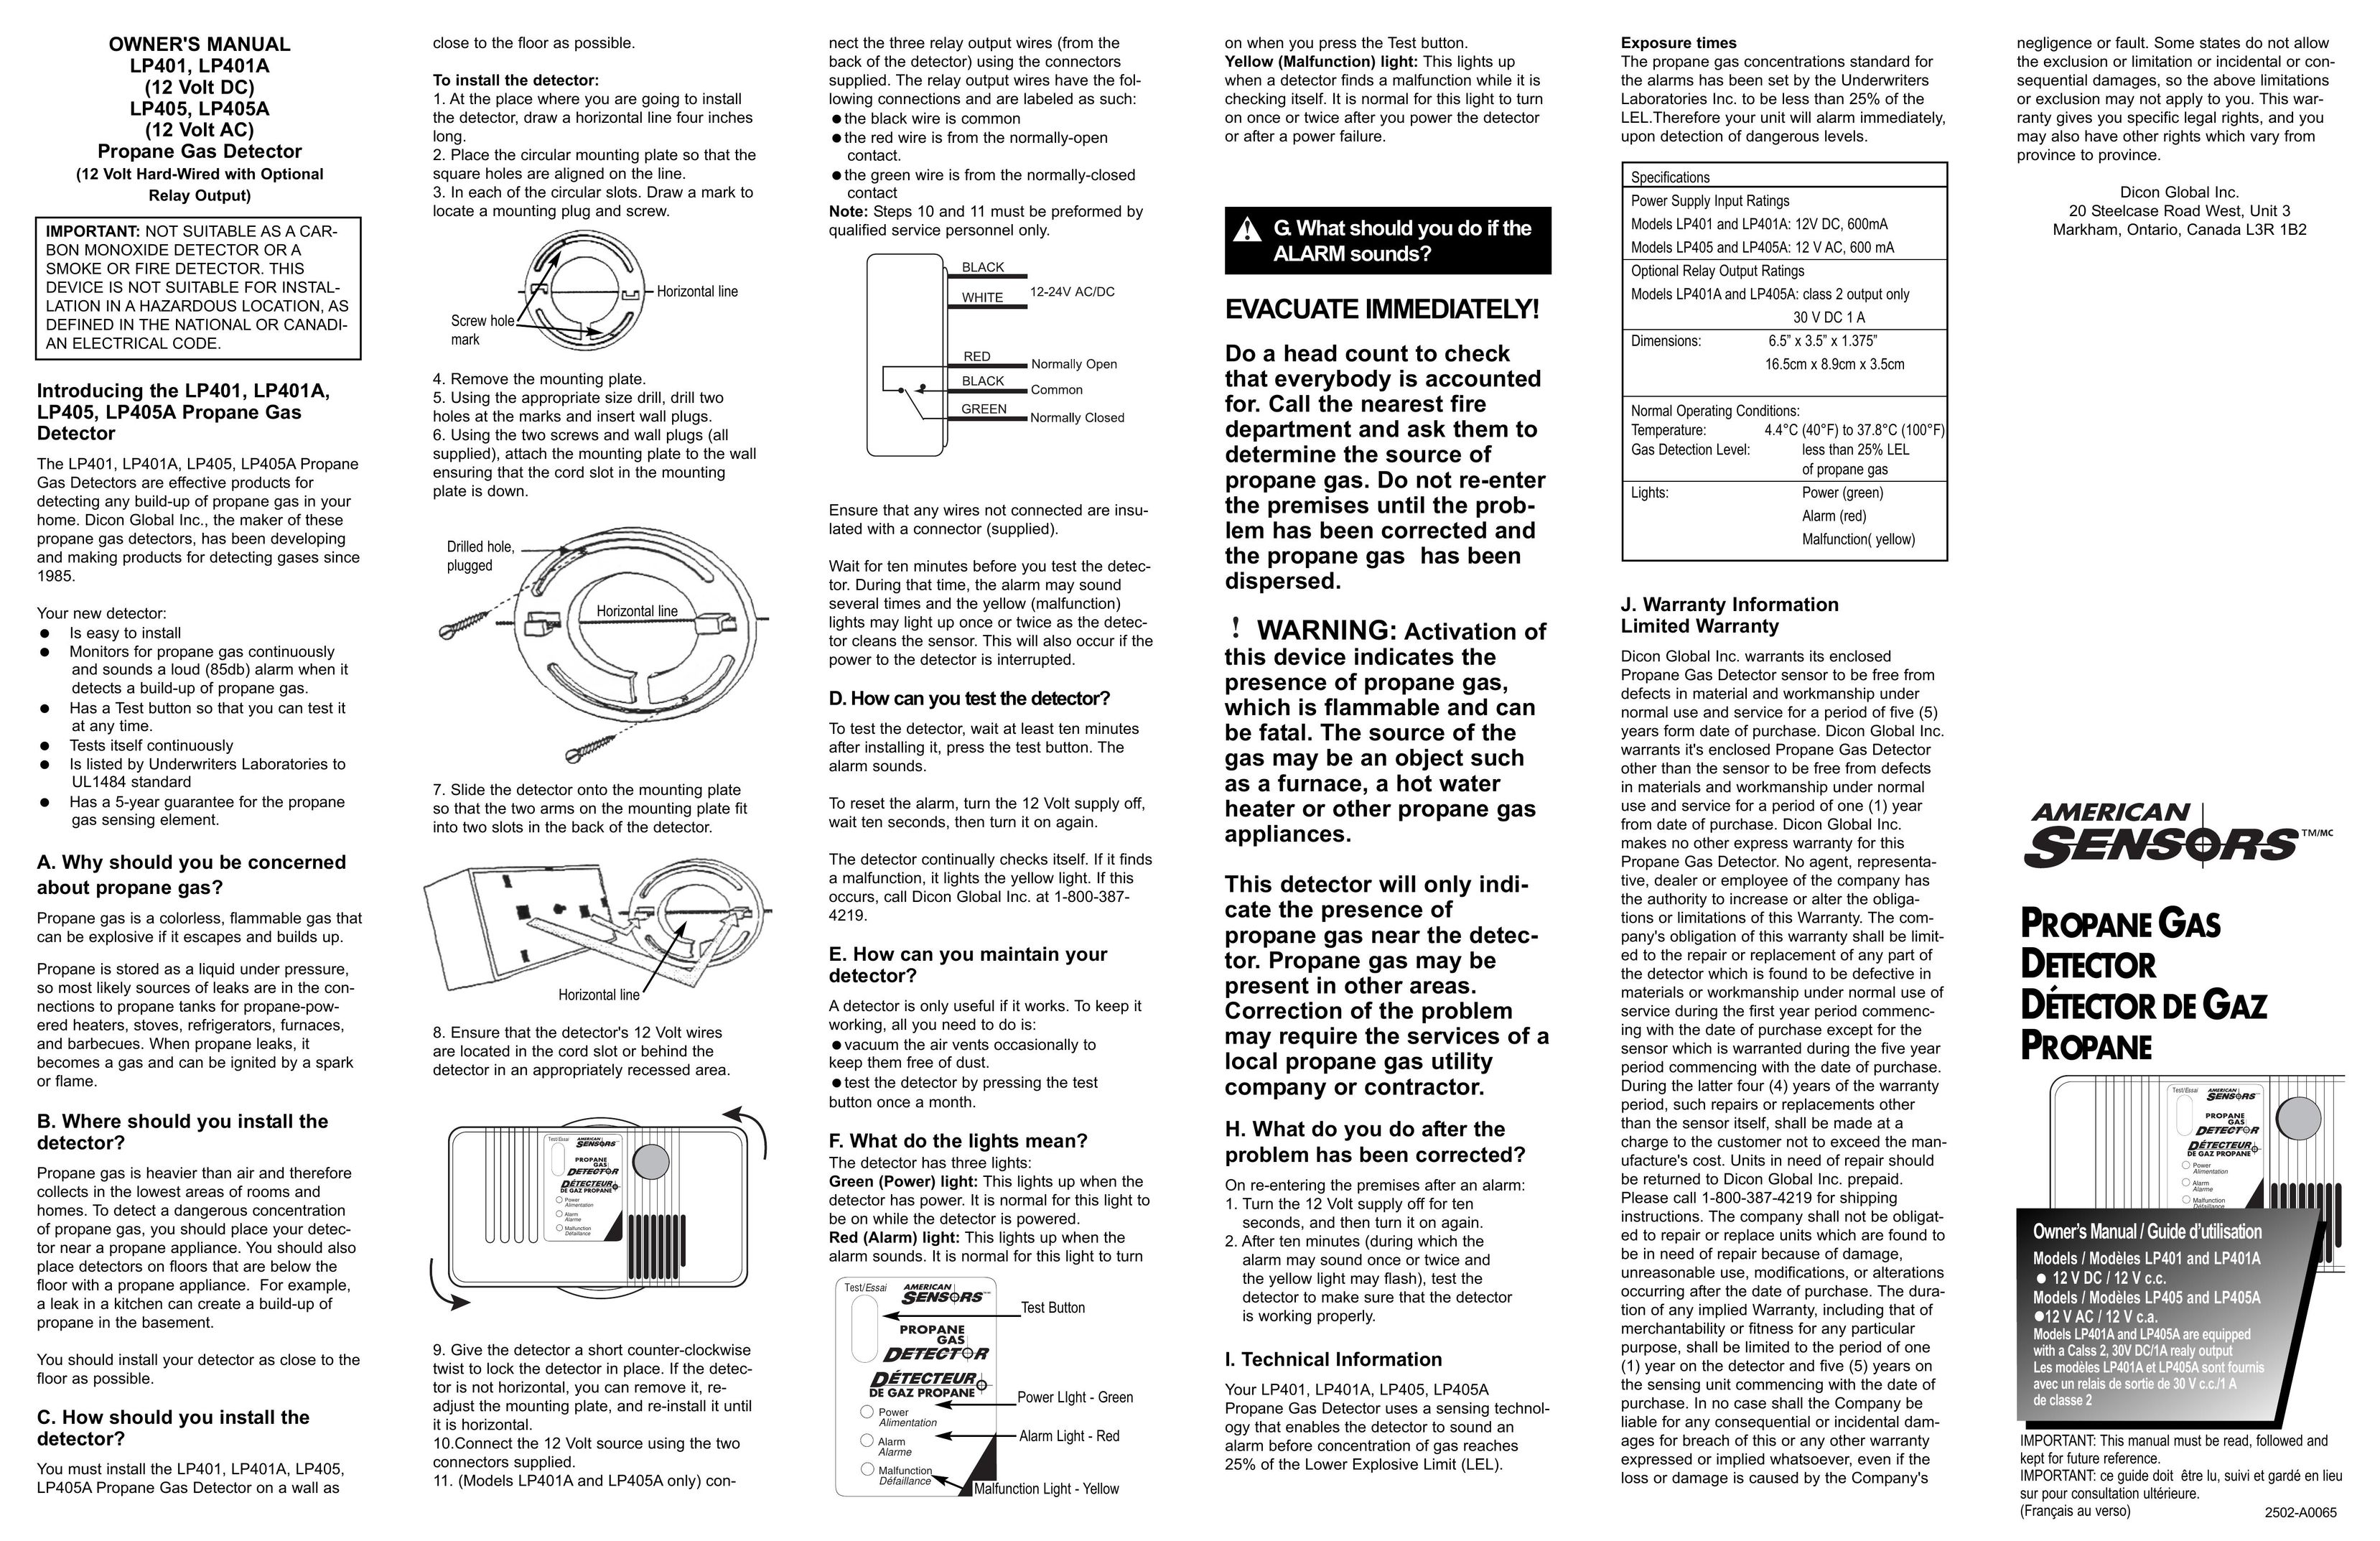 American Sensor LP405A Carbon Monoxide Alarm User Manual